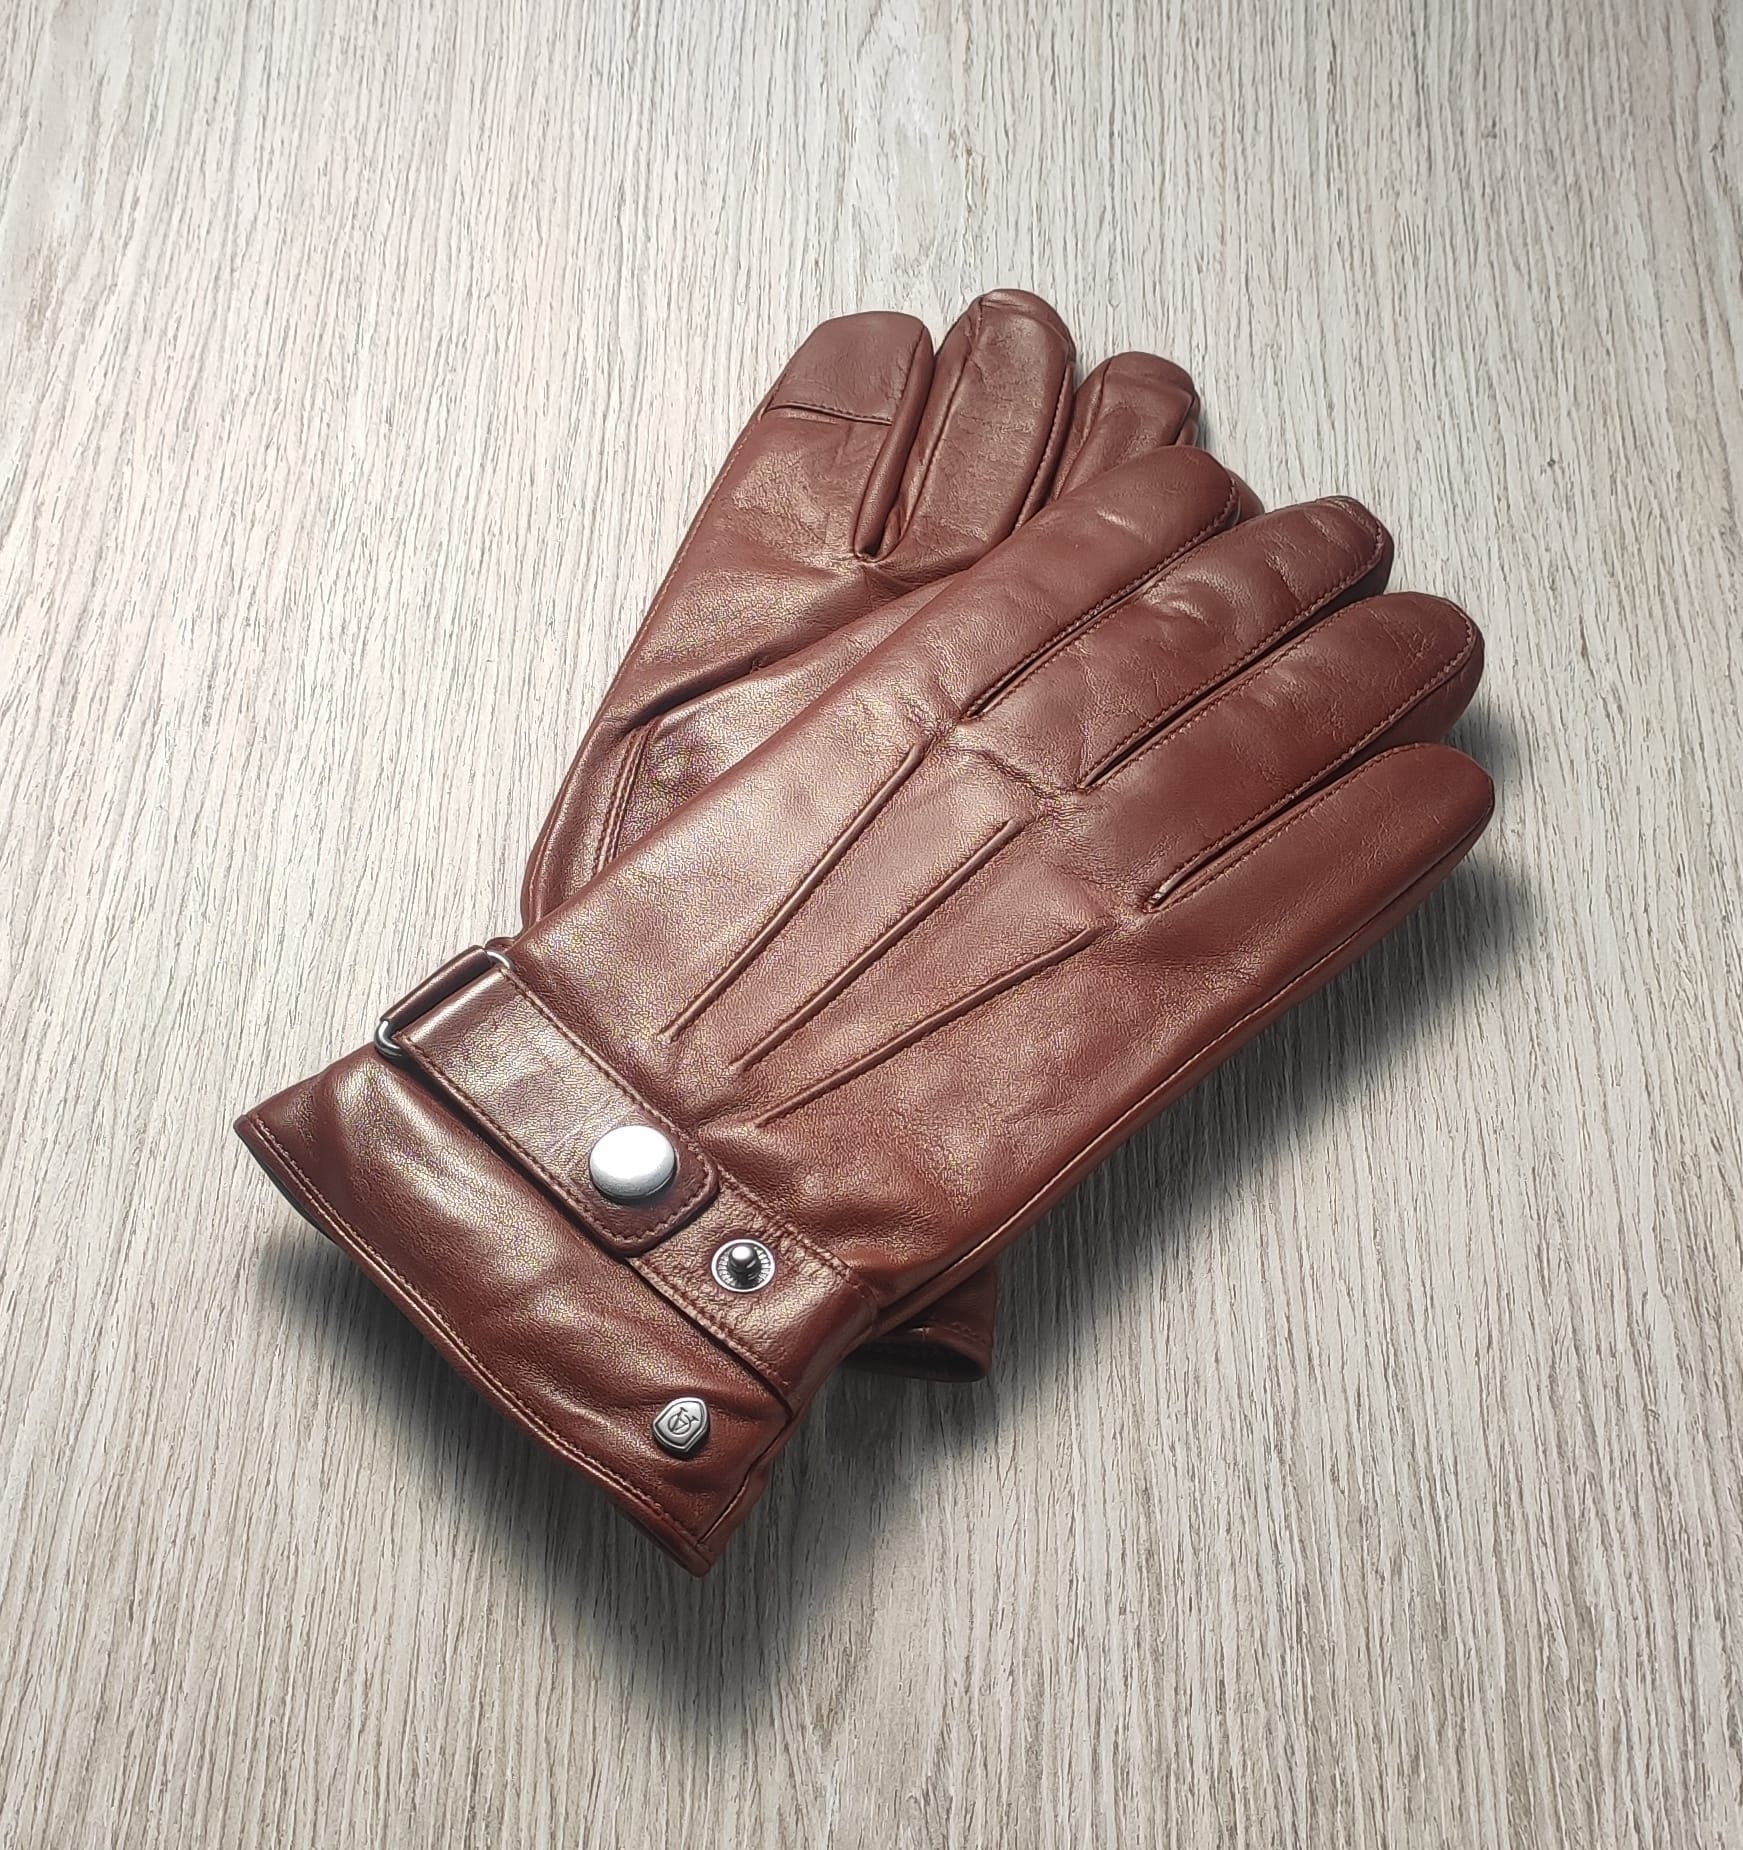 Cơ hội xuất khẩu găng tay da sang thị trường Đức MM-GT01-15K22